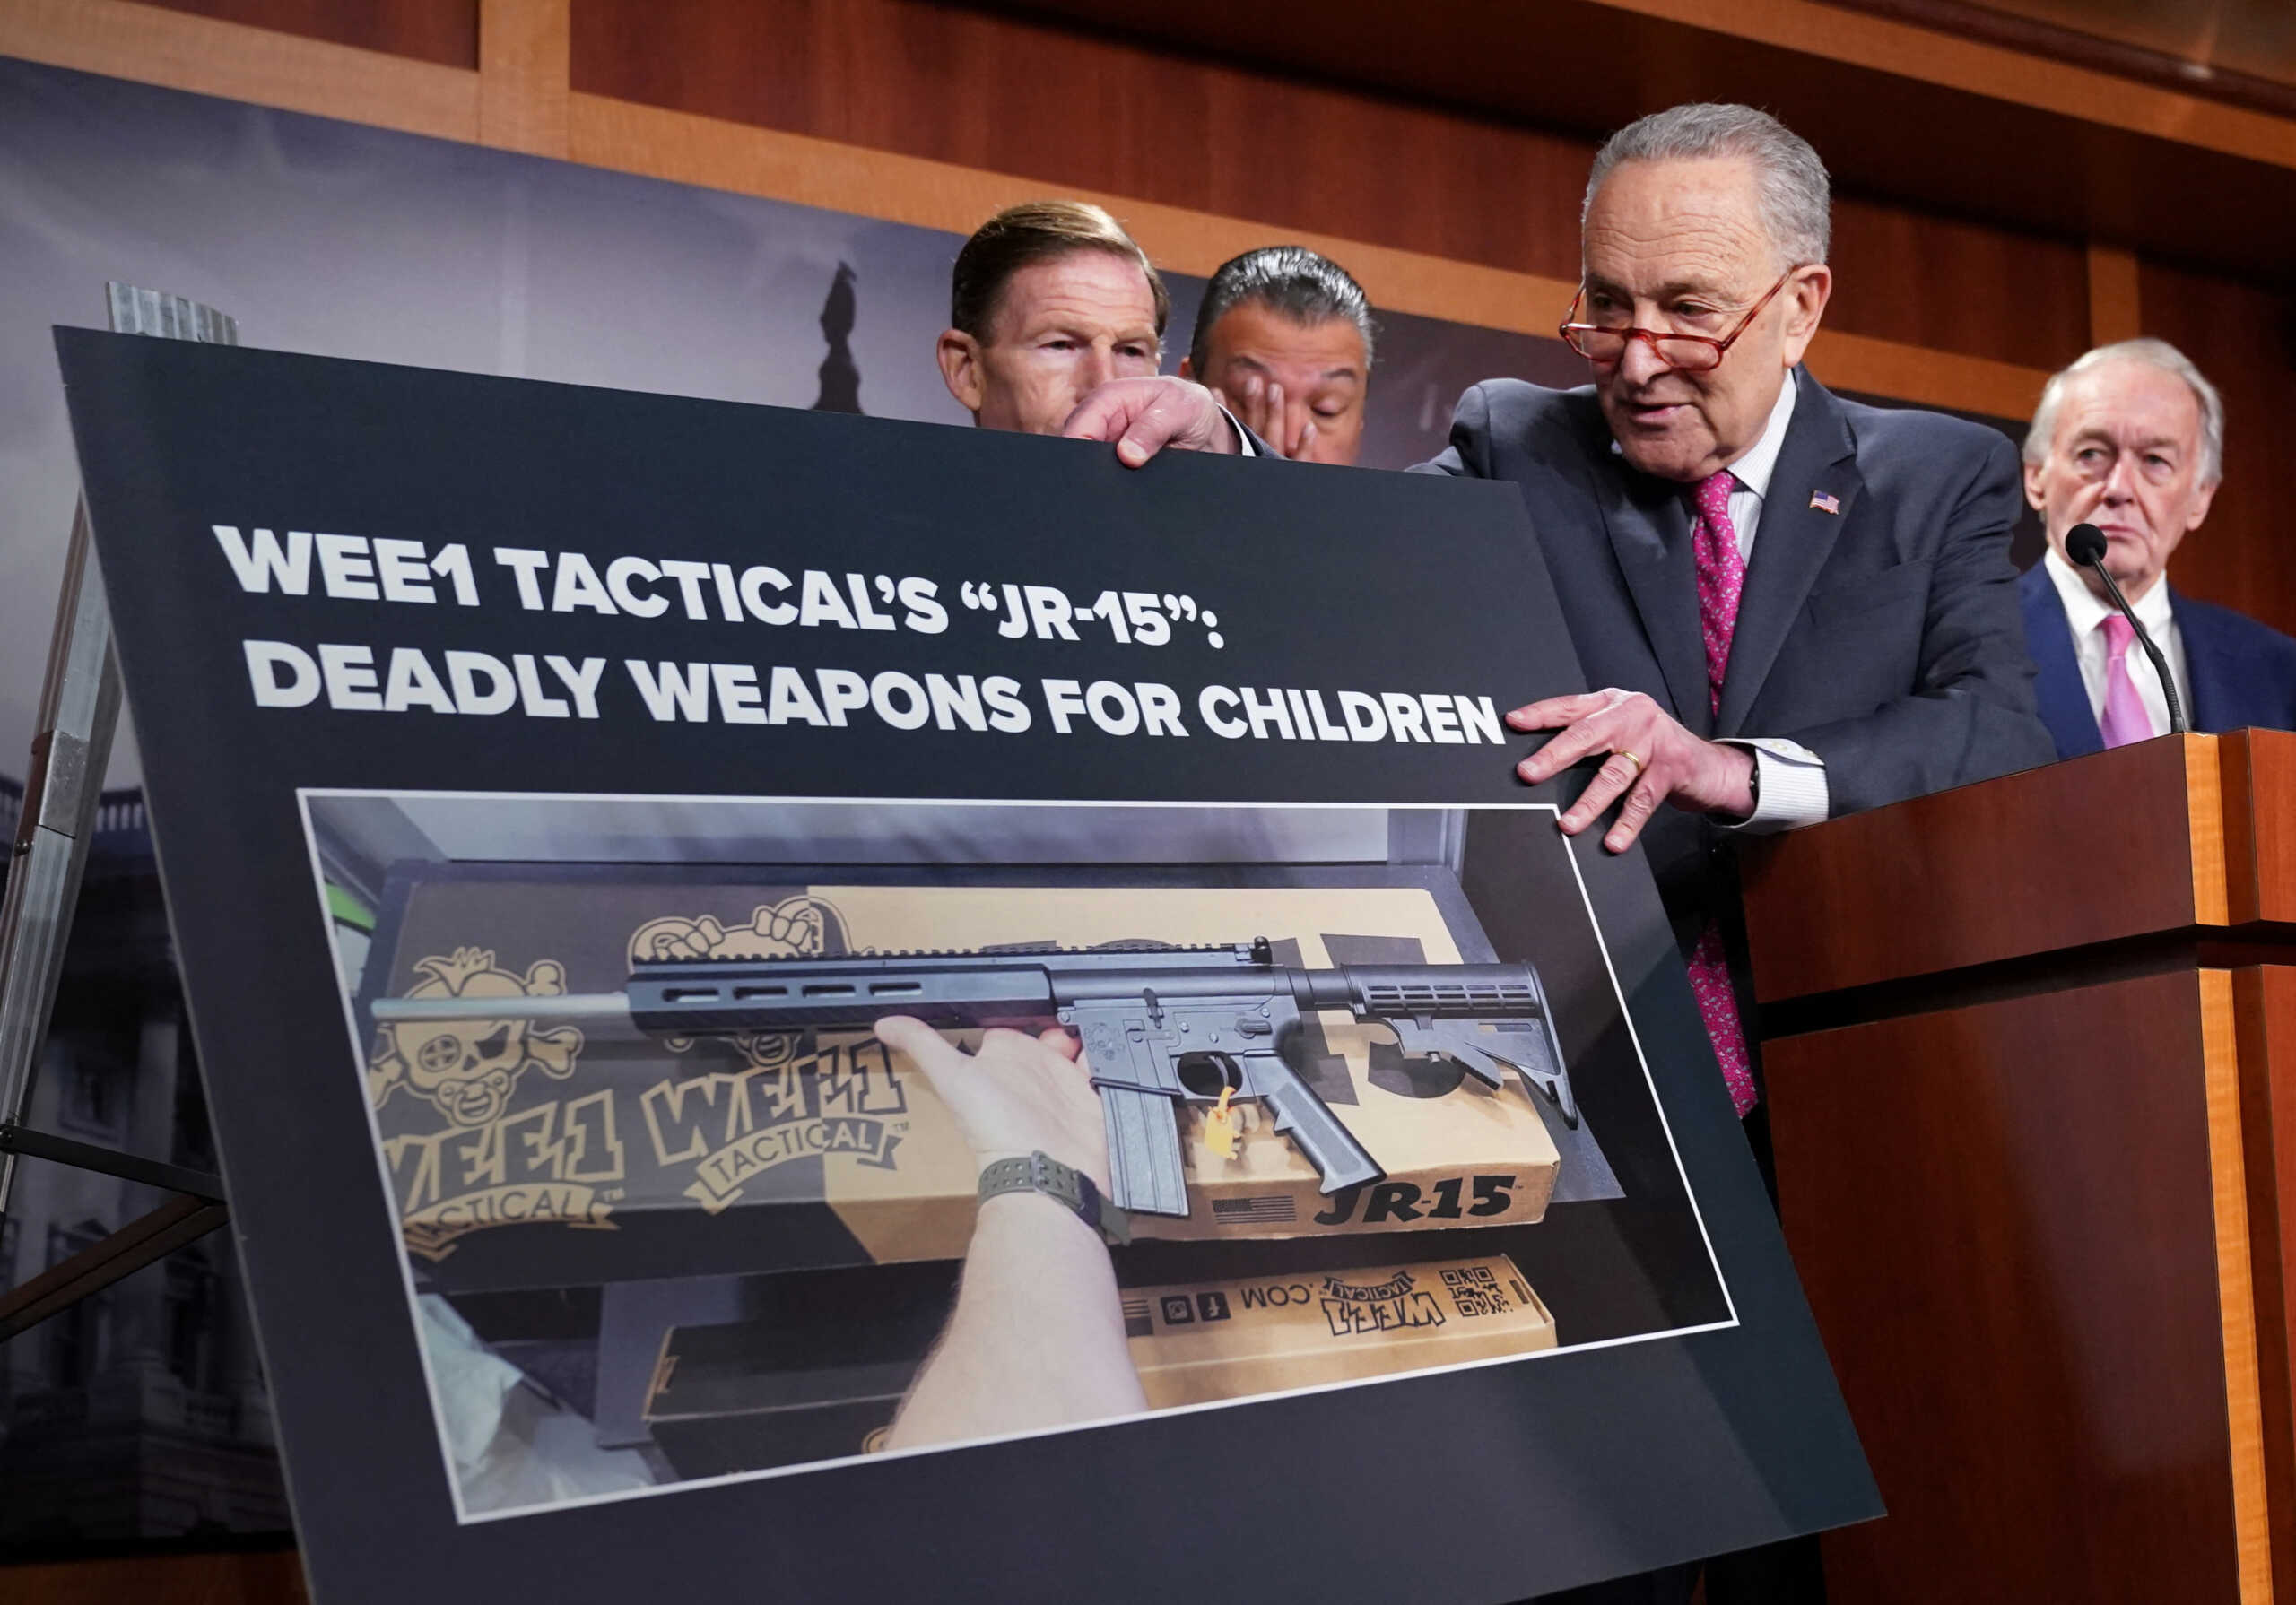 ΗΠΑ: Έφτιαξαν ημιαυτόματο όπλο για παιδιά – Οργισμένη αντίδραση από τους Δημοκρατικούς